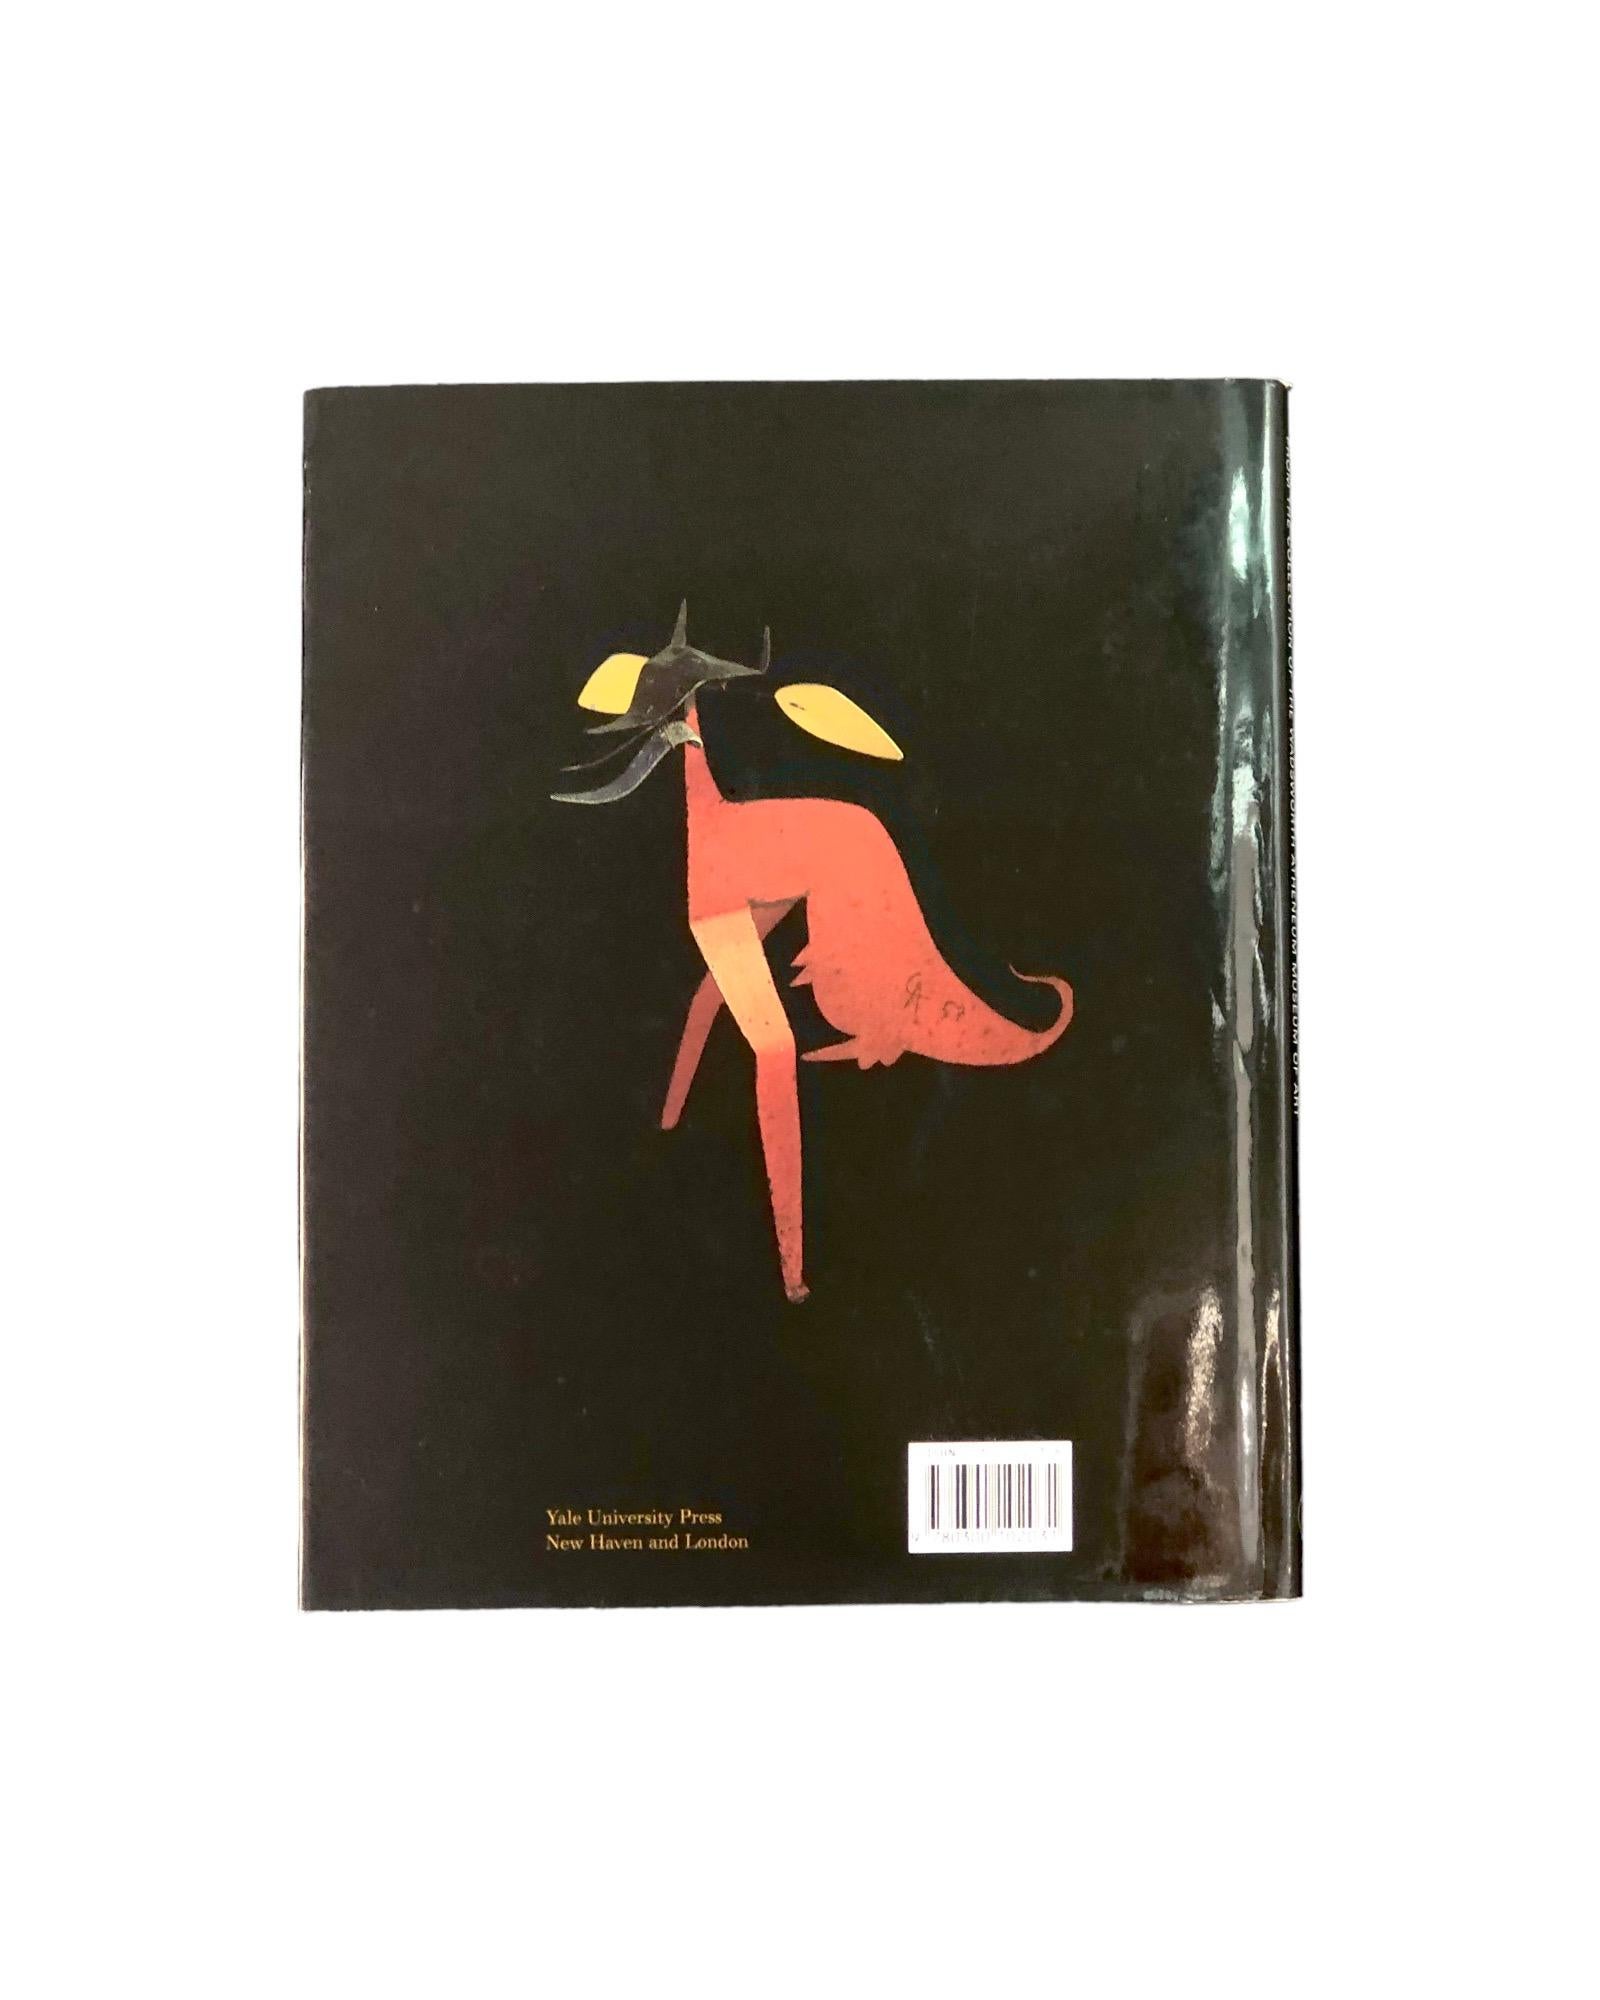 Surrealismus und Modernismus aus der Collection of the Wadsworth Atheneum Museum of Art. Gebundenes Buch mit Schutzumschlag, erschienen 2005 bei Yale University Press. Gedruckt in Singapur, illustriert, 152 Seiten.
